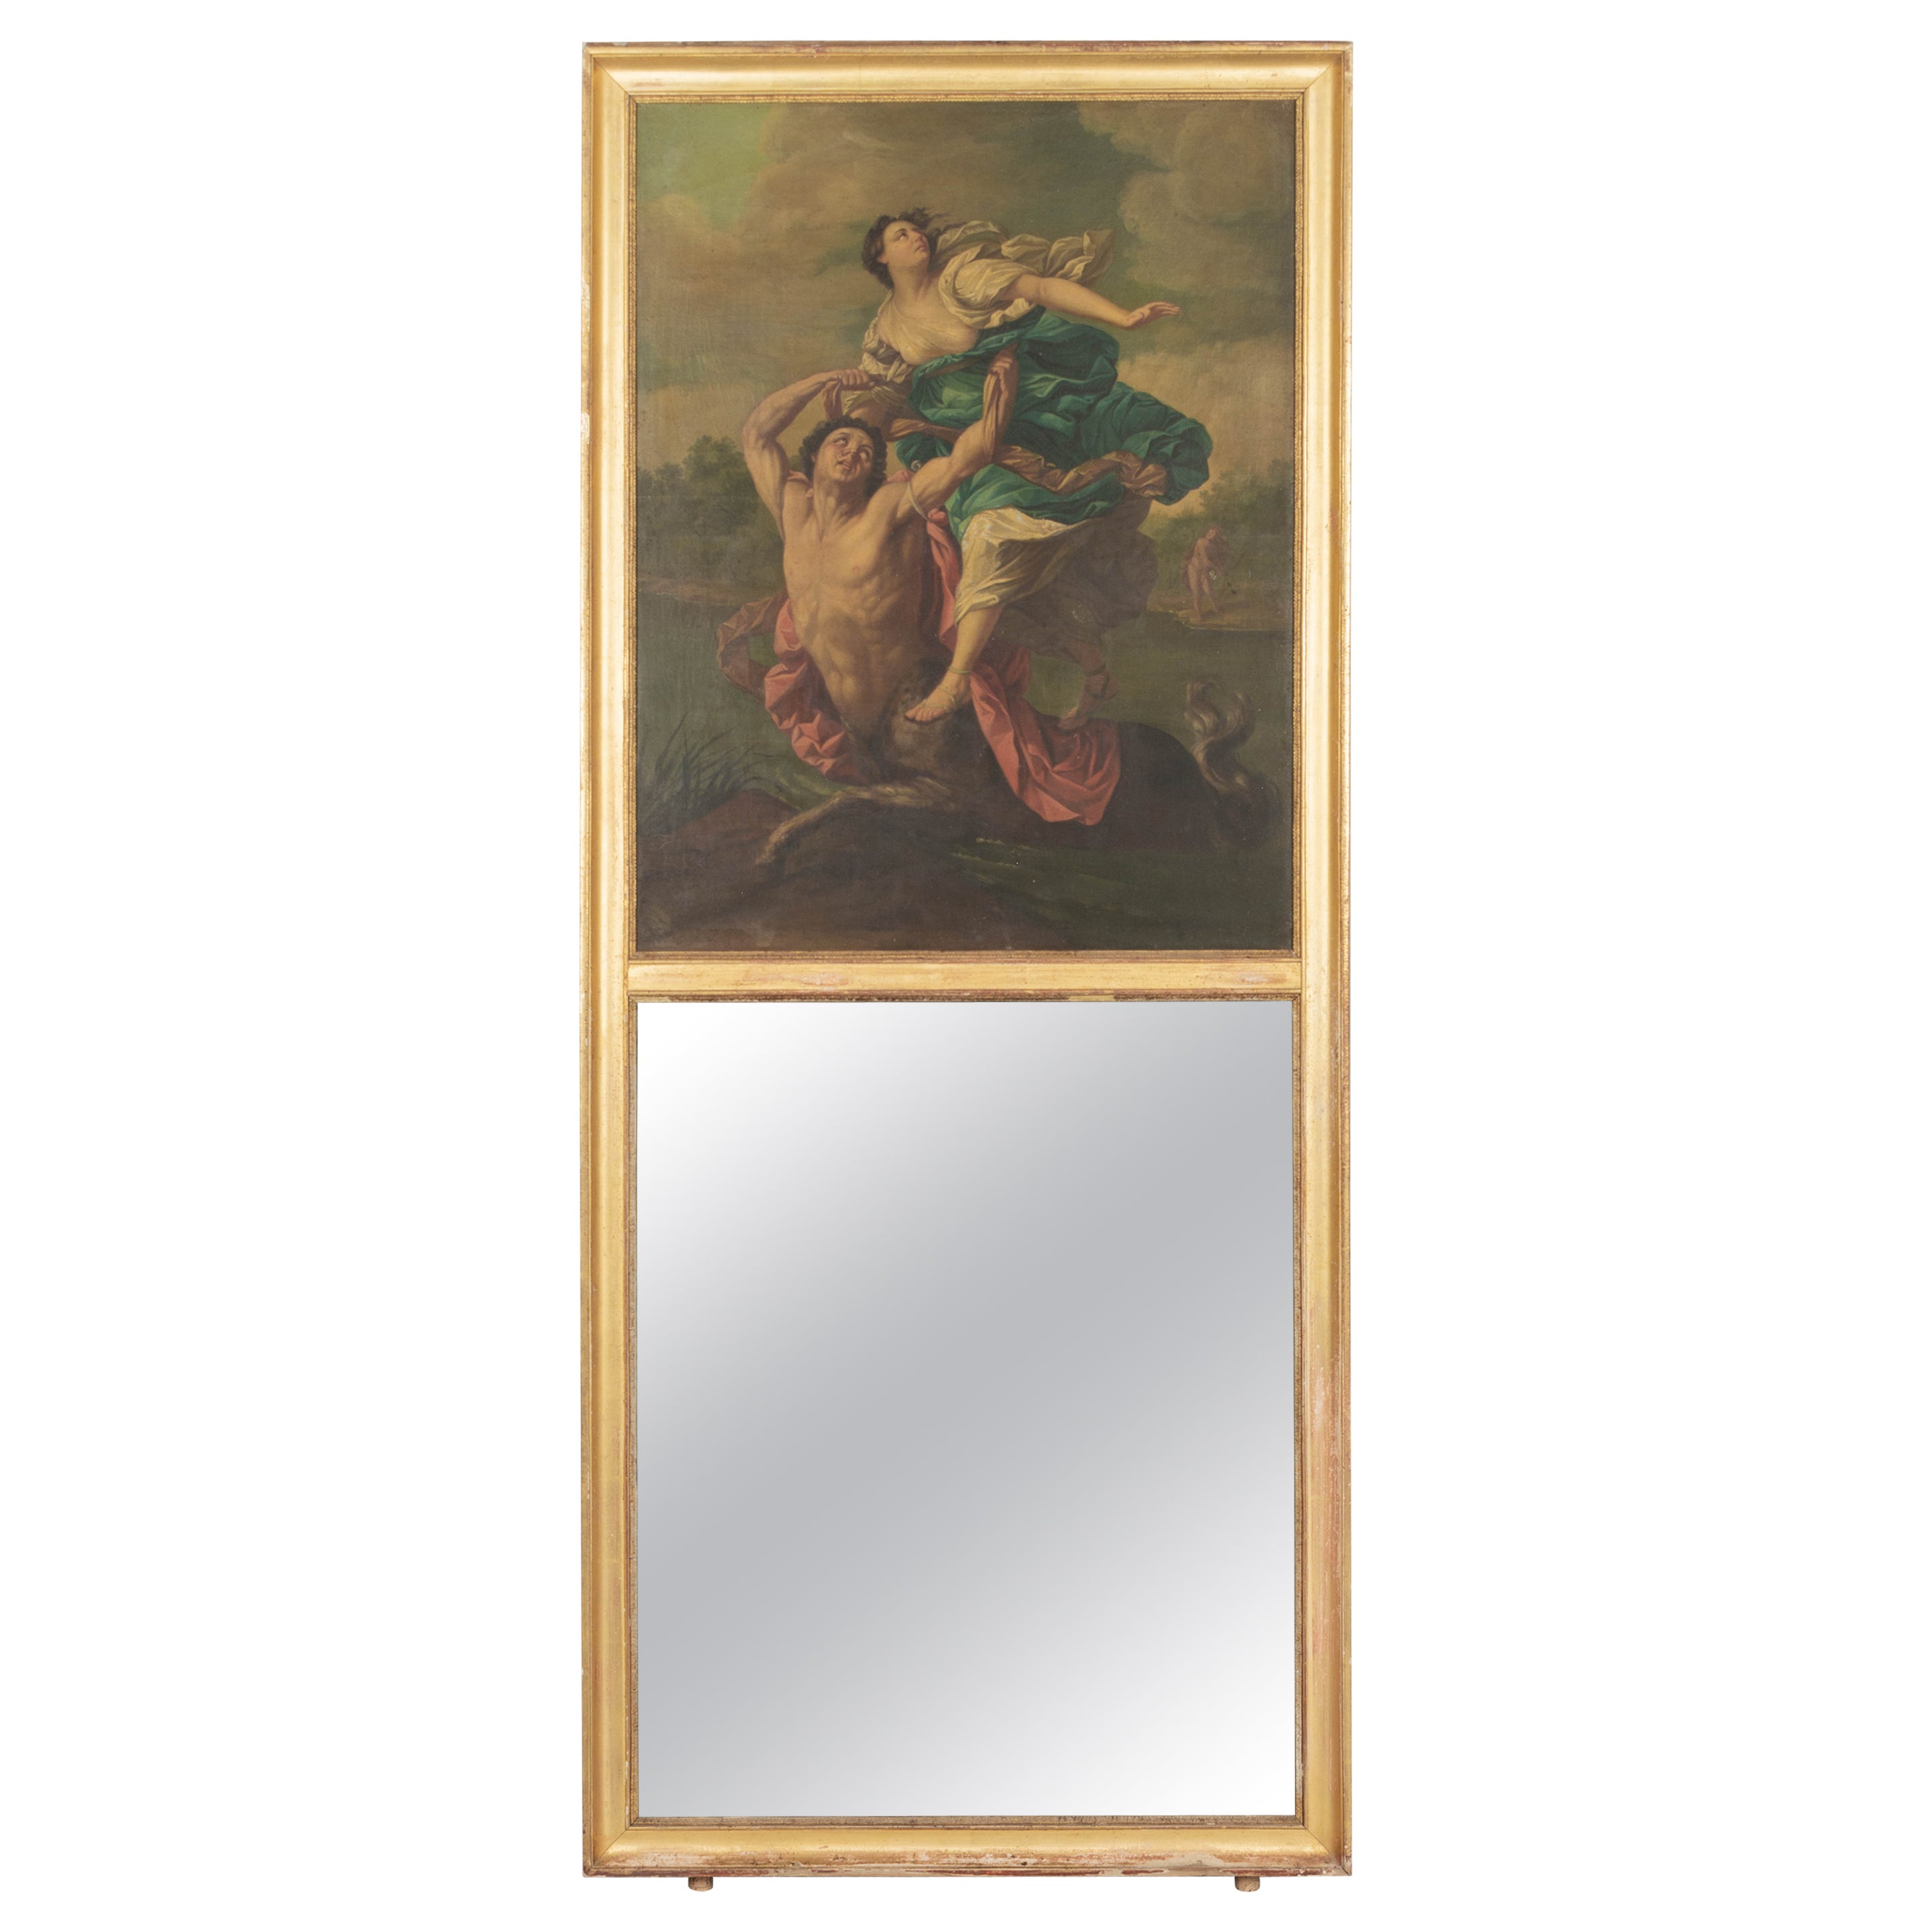 Miroir Trumeau français du 18ème siècle avec peinture de mythe grecque